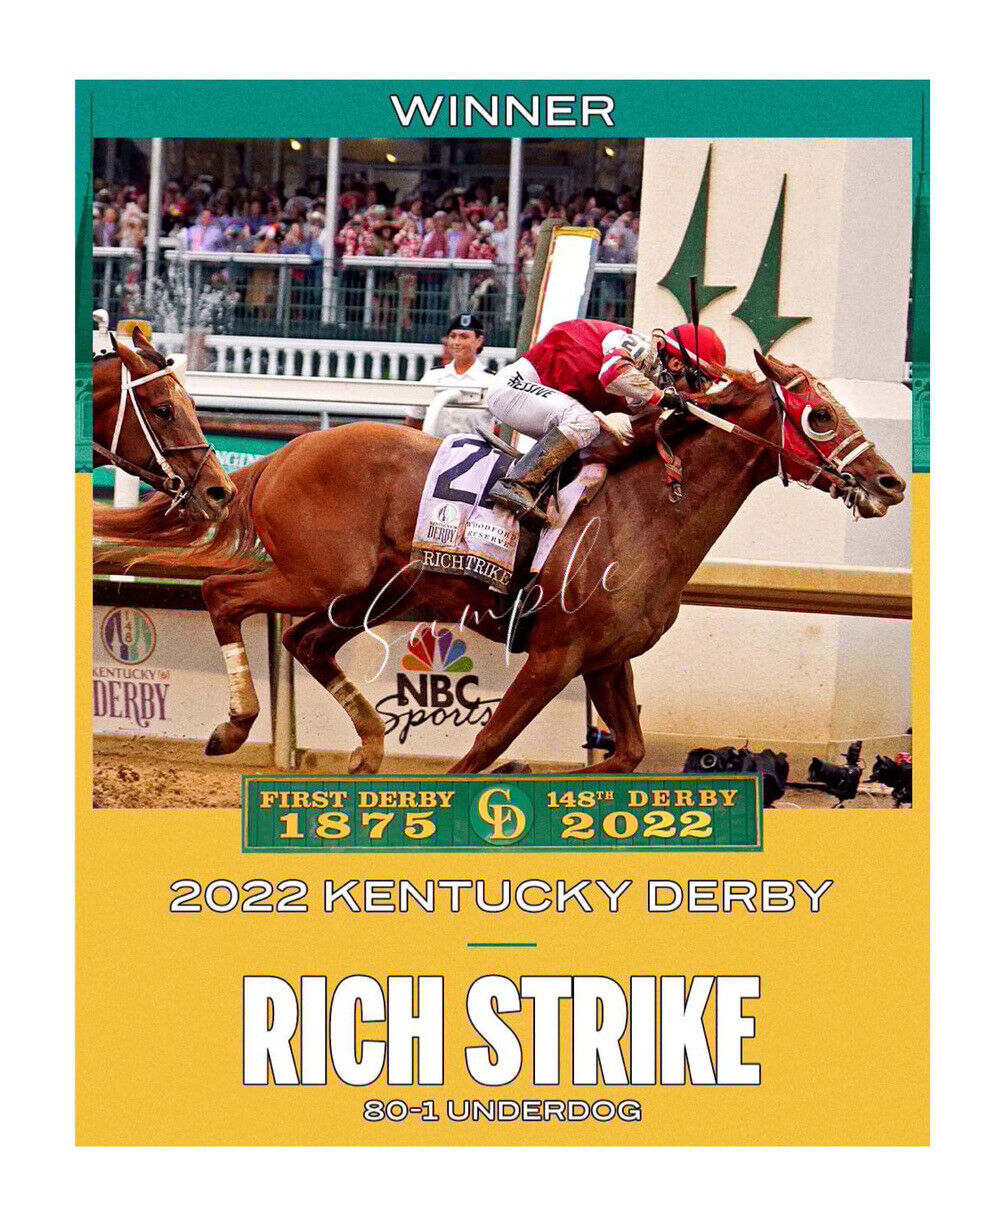 Kentucky Derby 148 Winner Rich Strike 3”x4” Flexible Fridge Magnet BL1036